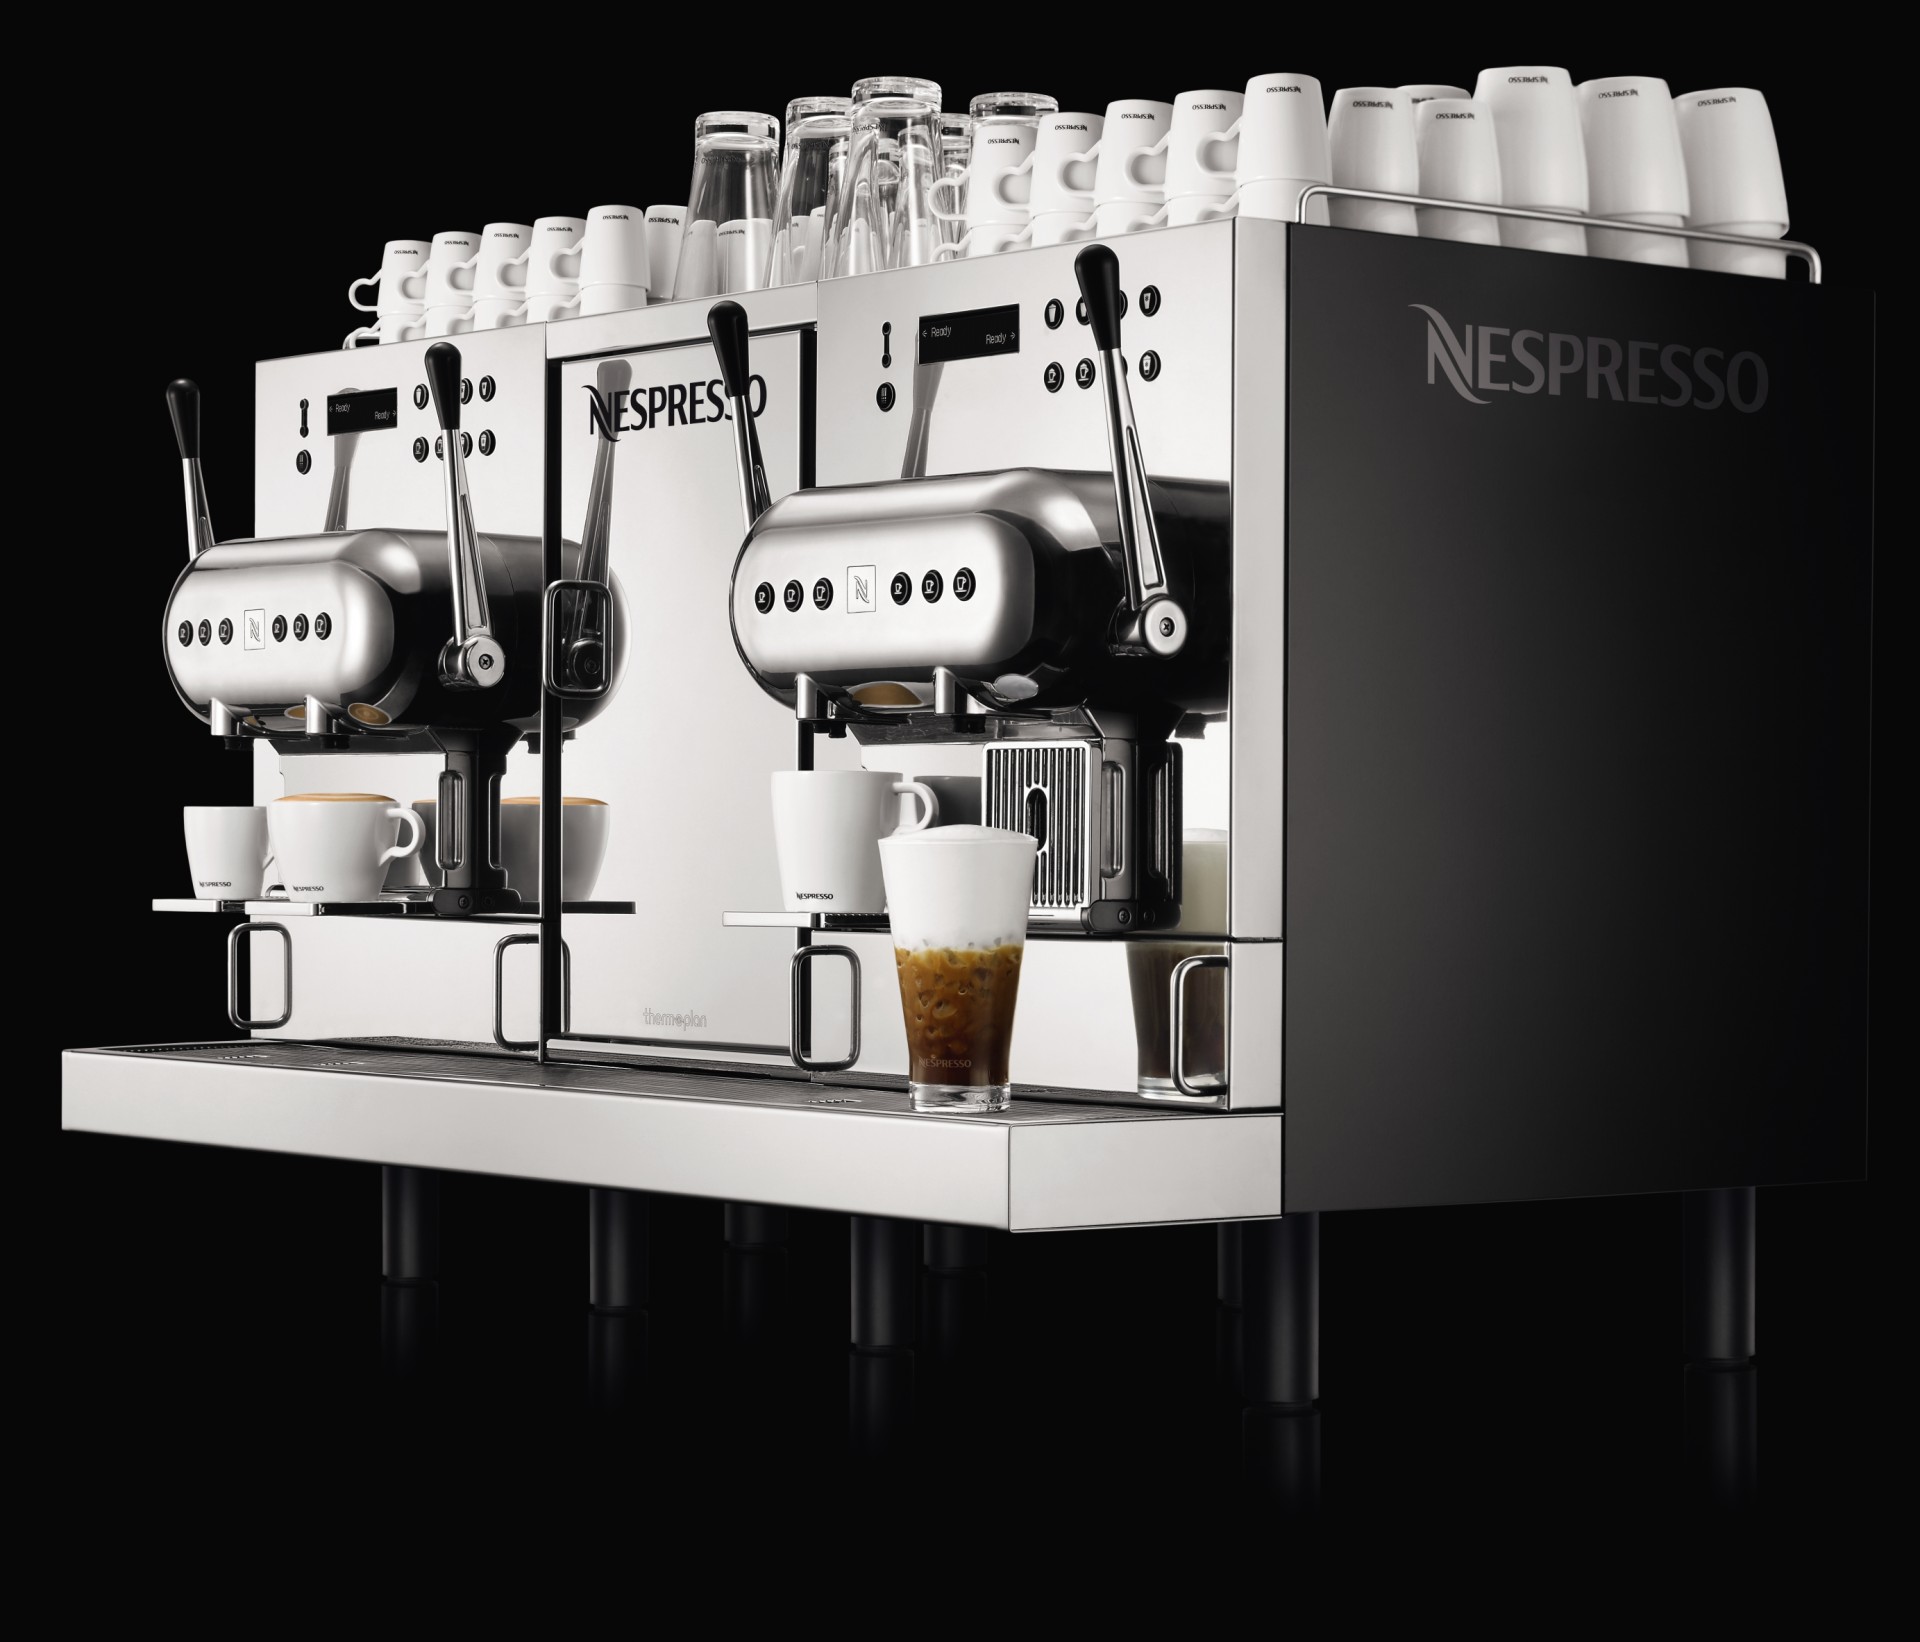 Nespresso, pioneer of premium single-serve coffee, unveils new